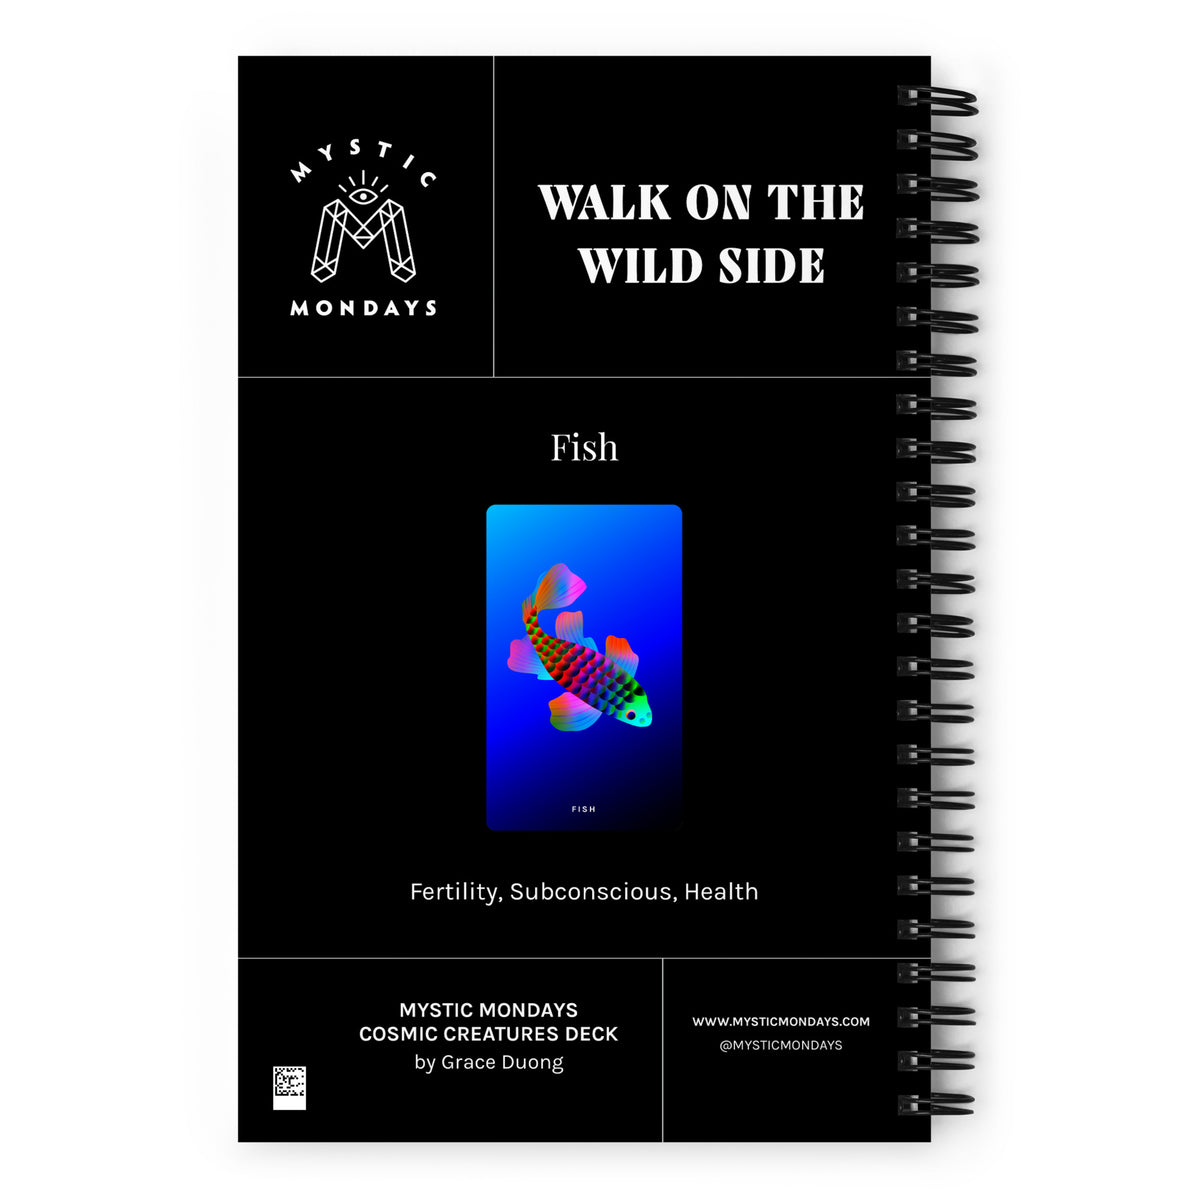 Fish Journal